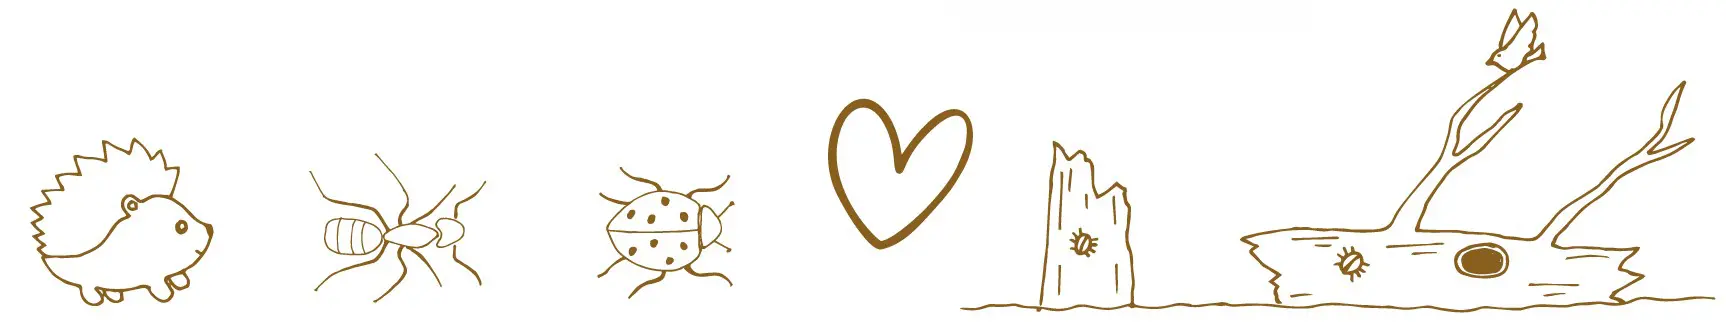 Illustration på en igelkott, myra, nyckelpiga, ett hjärta och ett dött träd